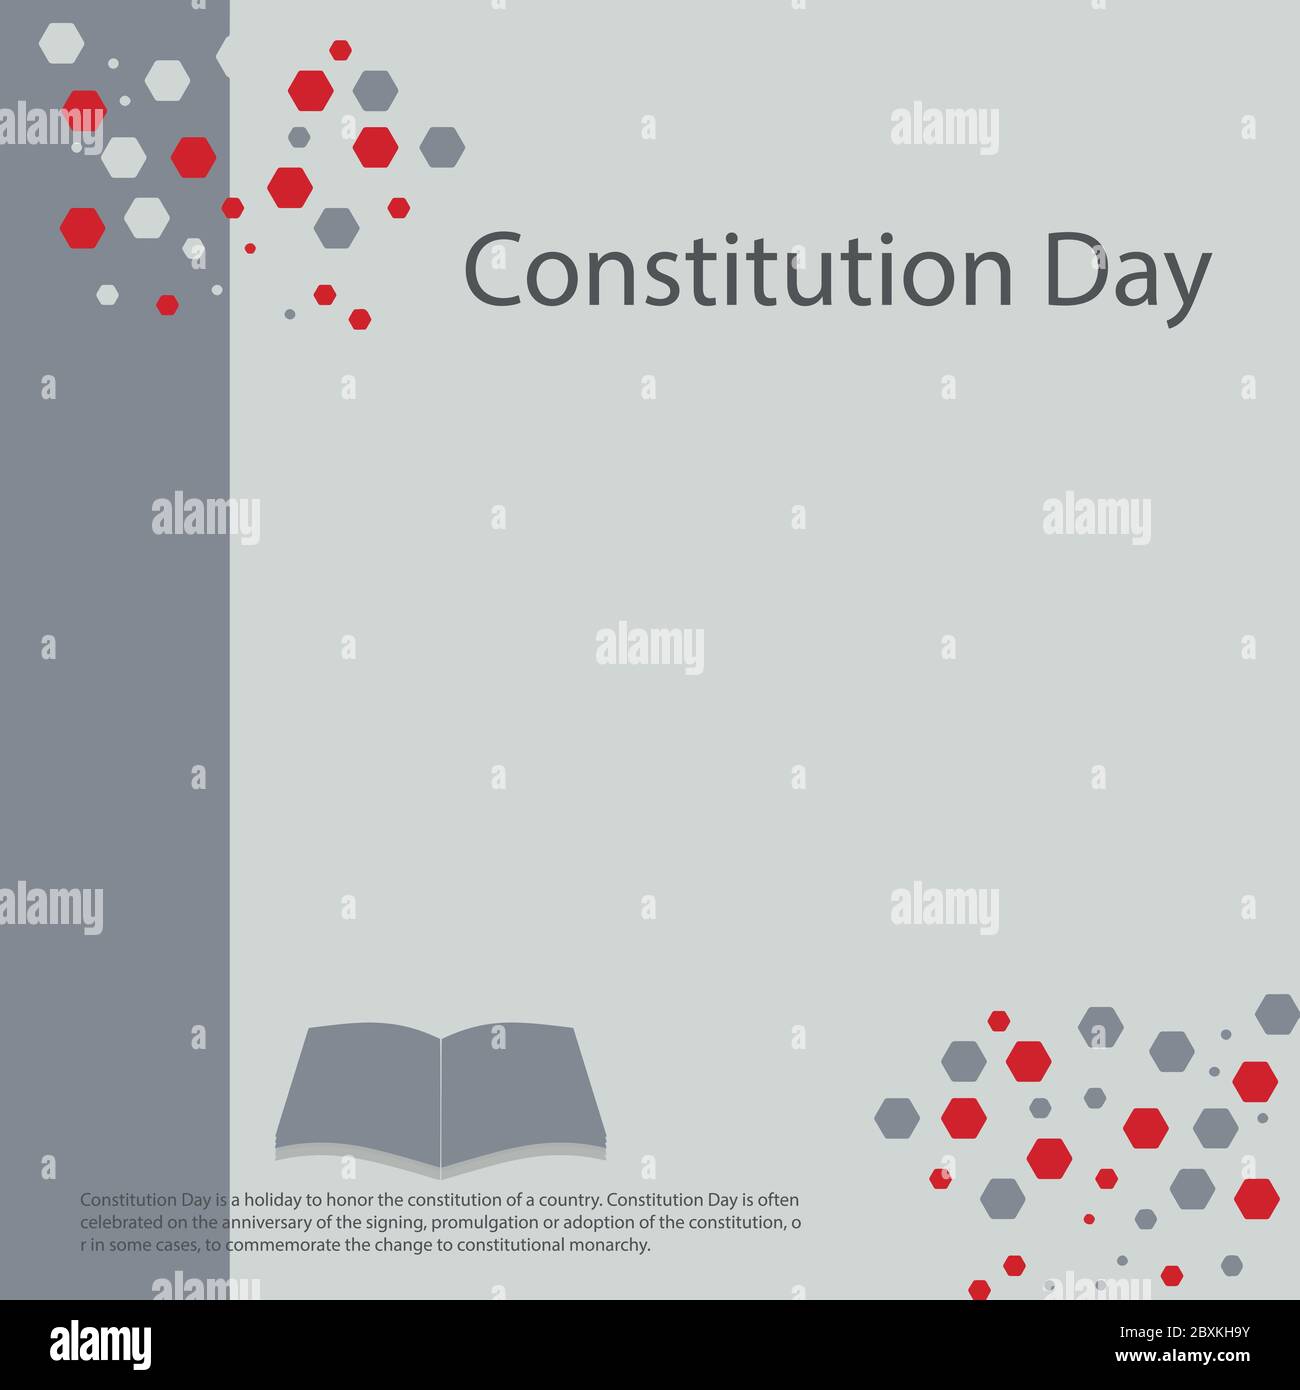 Der Tag der Verfassung ist ein Feiertag zur Ehre der Verfassung eines Landes. Der Tag der Verfassung wird oft am Jahrestag der Unterzeichnung gefeiert, promulga Stock Vektor